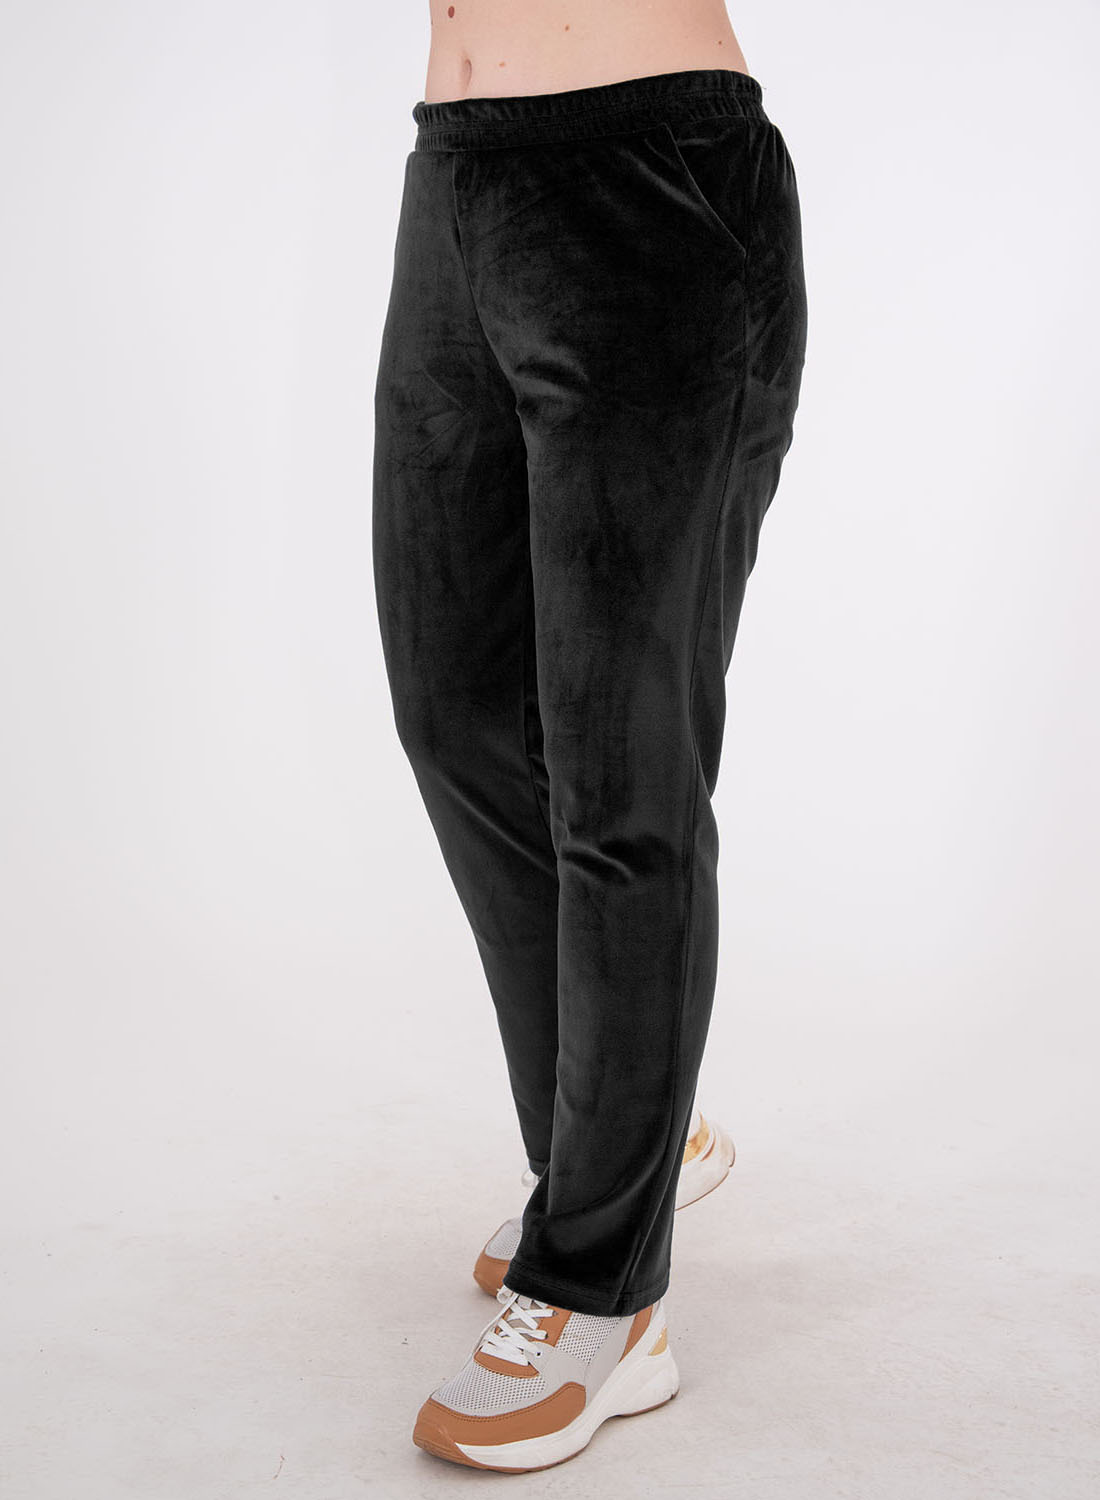 Μαύρο βελουτέ παντελόνι σε ίσια γραμμή